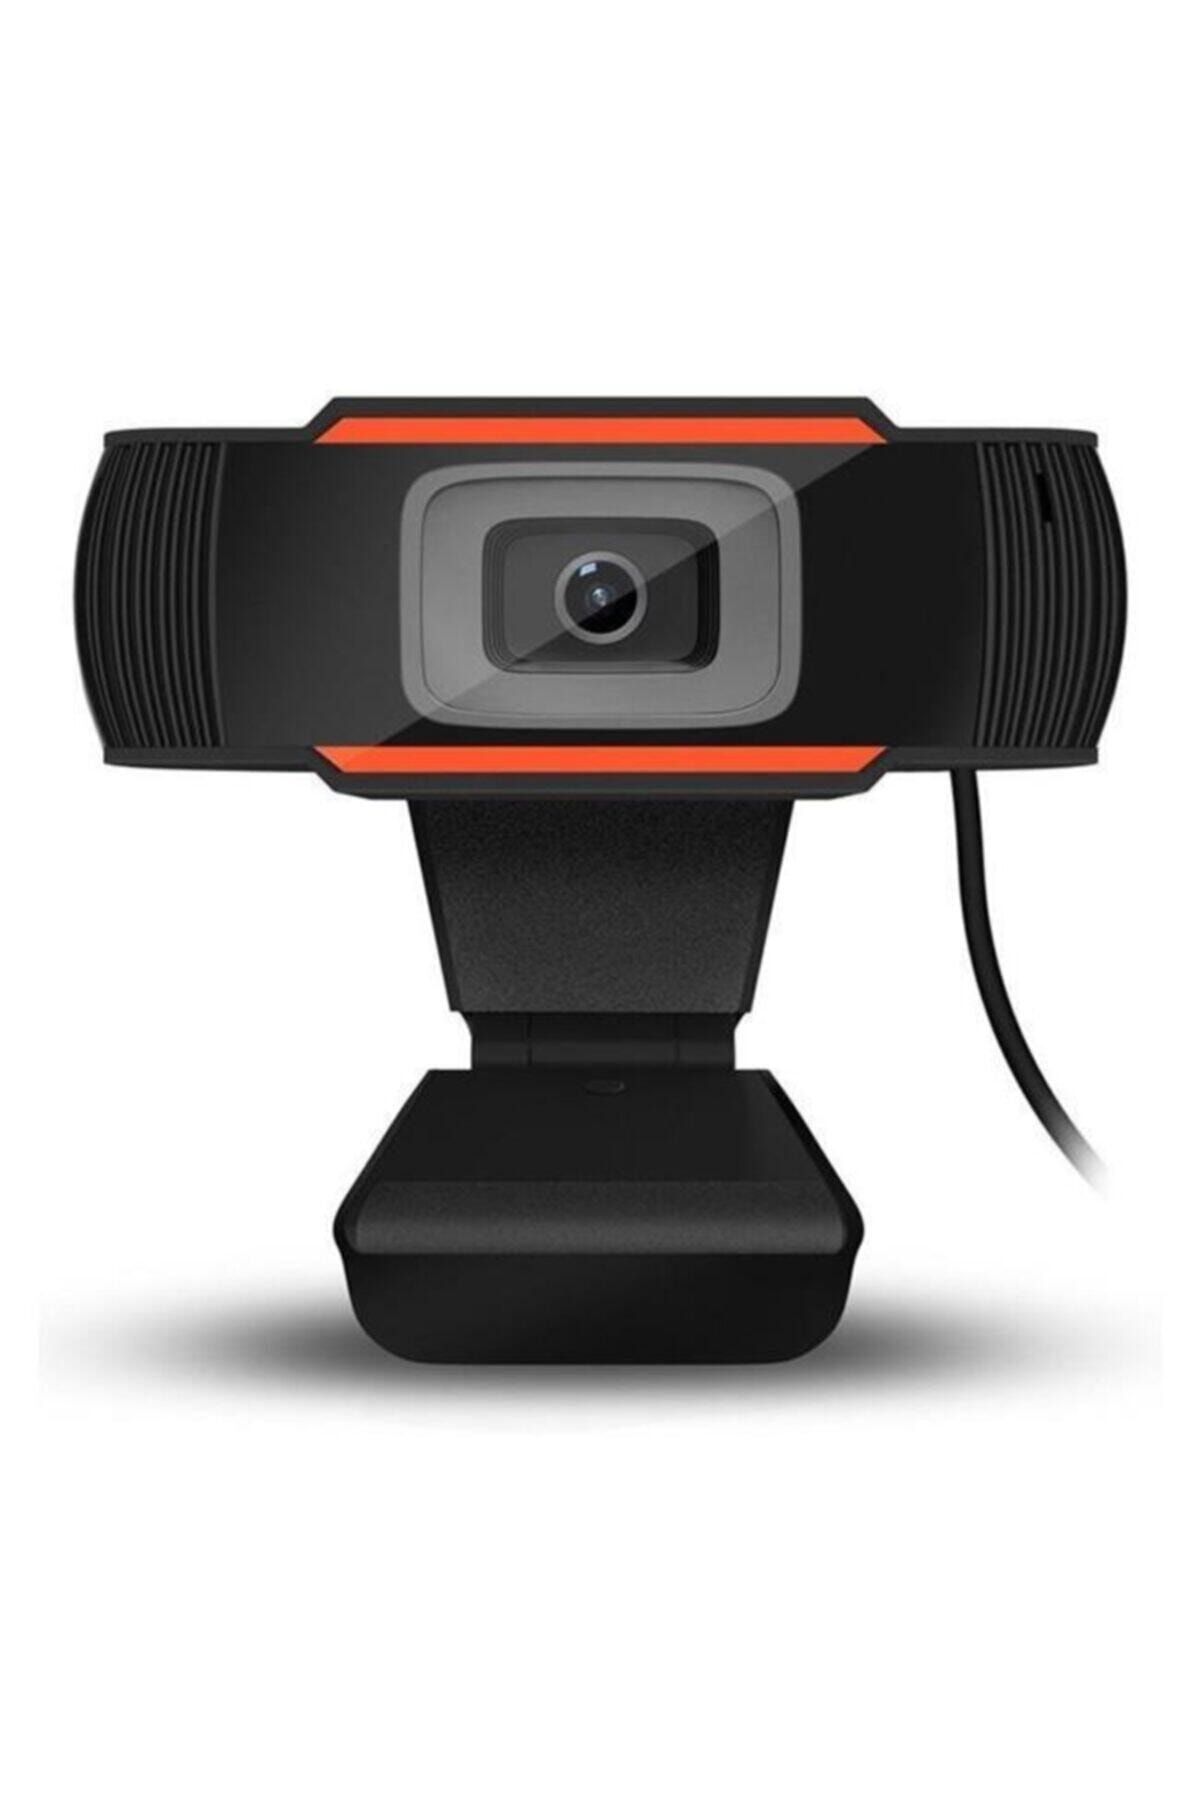 OEM Arc-7200 1,3mp 720p Mıkrofonlu Usb Webcam Tak Çalıştır